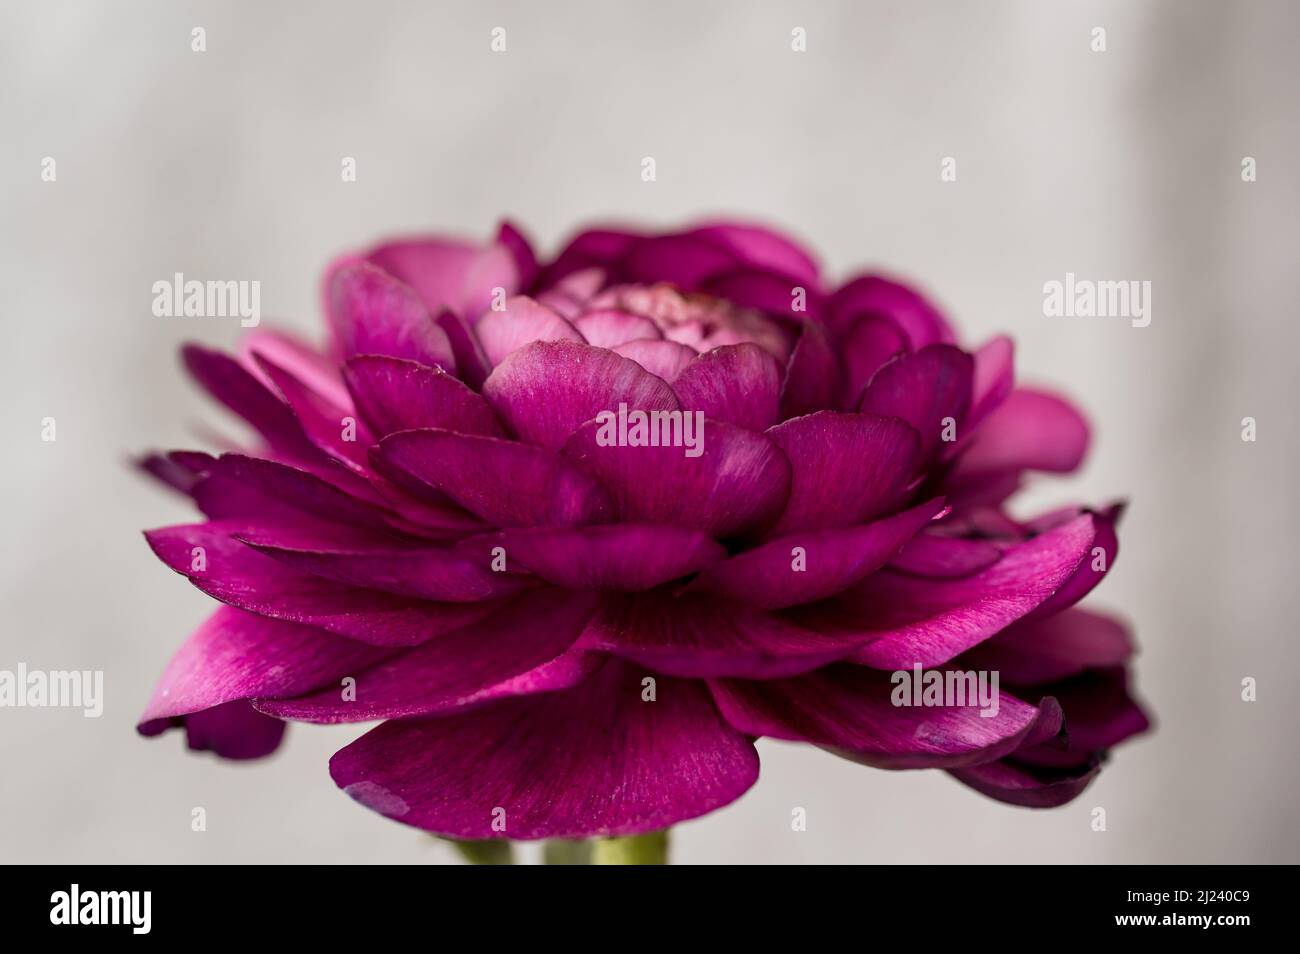 Up close macro of deep pink ranunculus petals Stock Photo